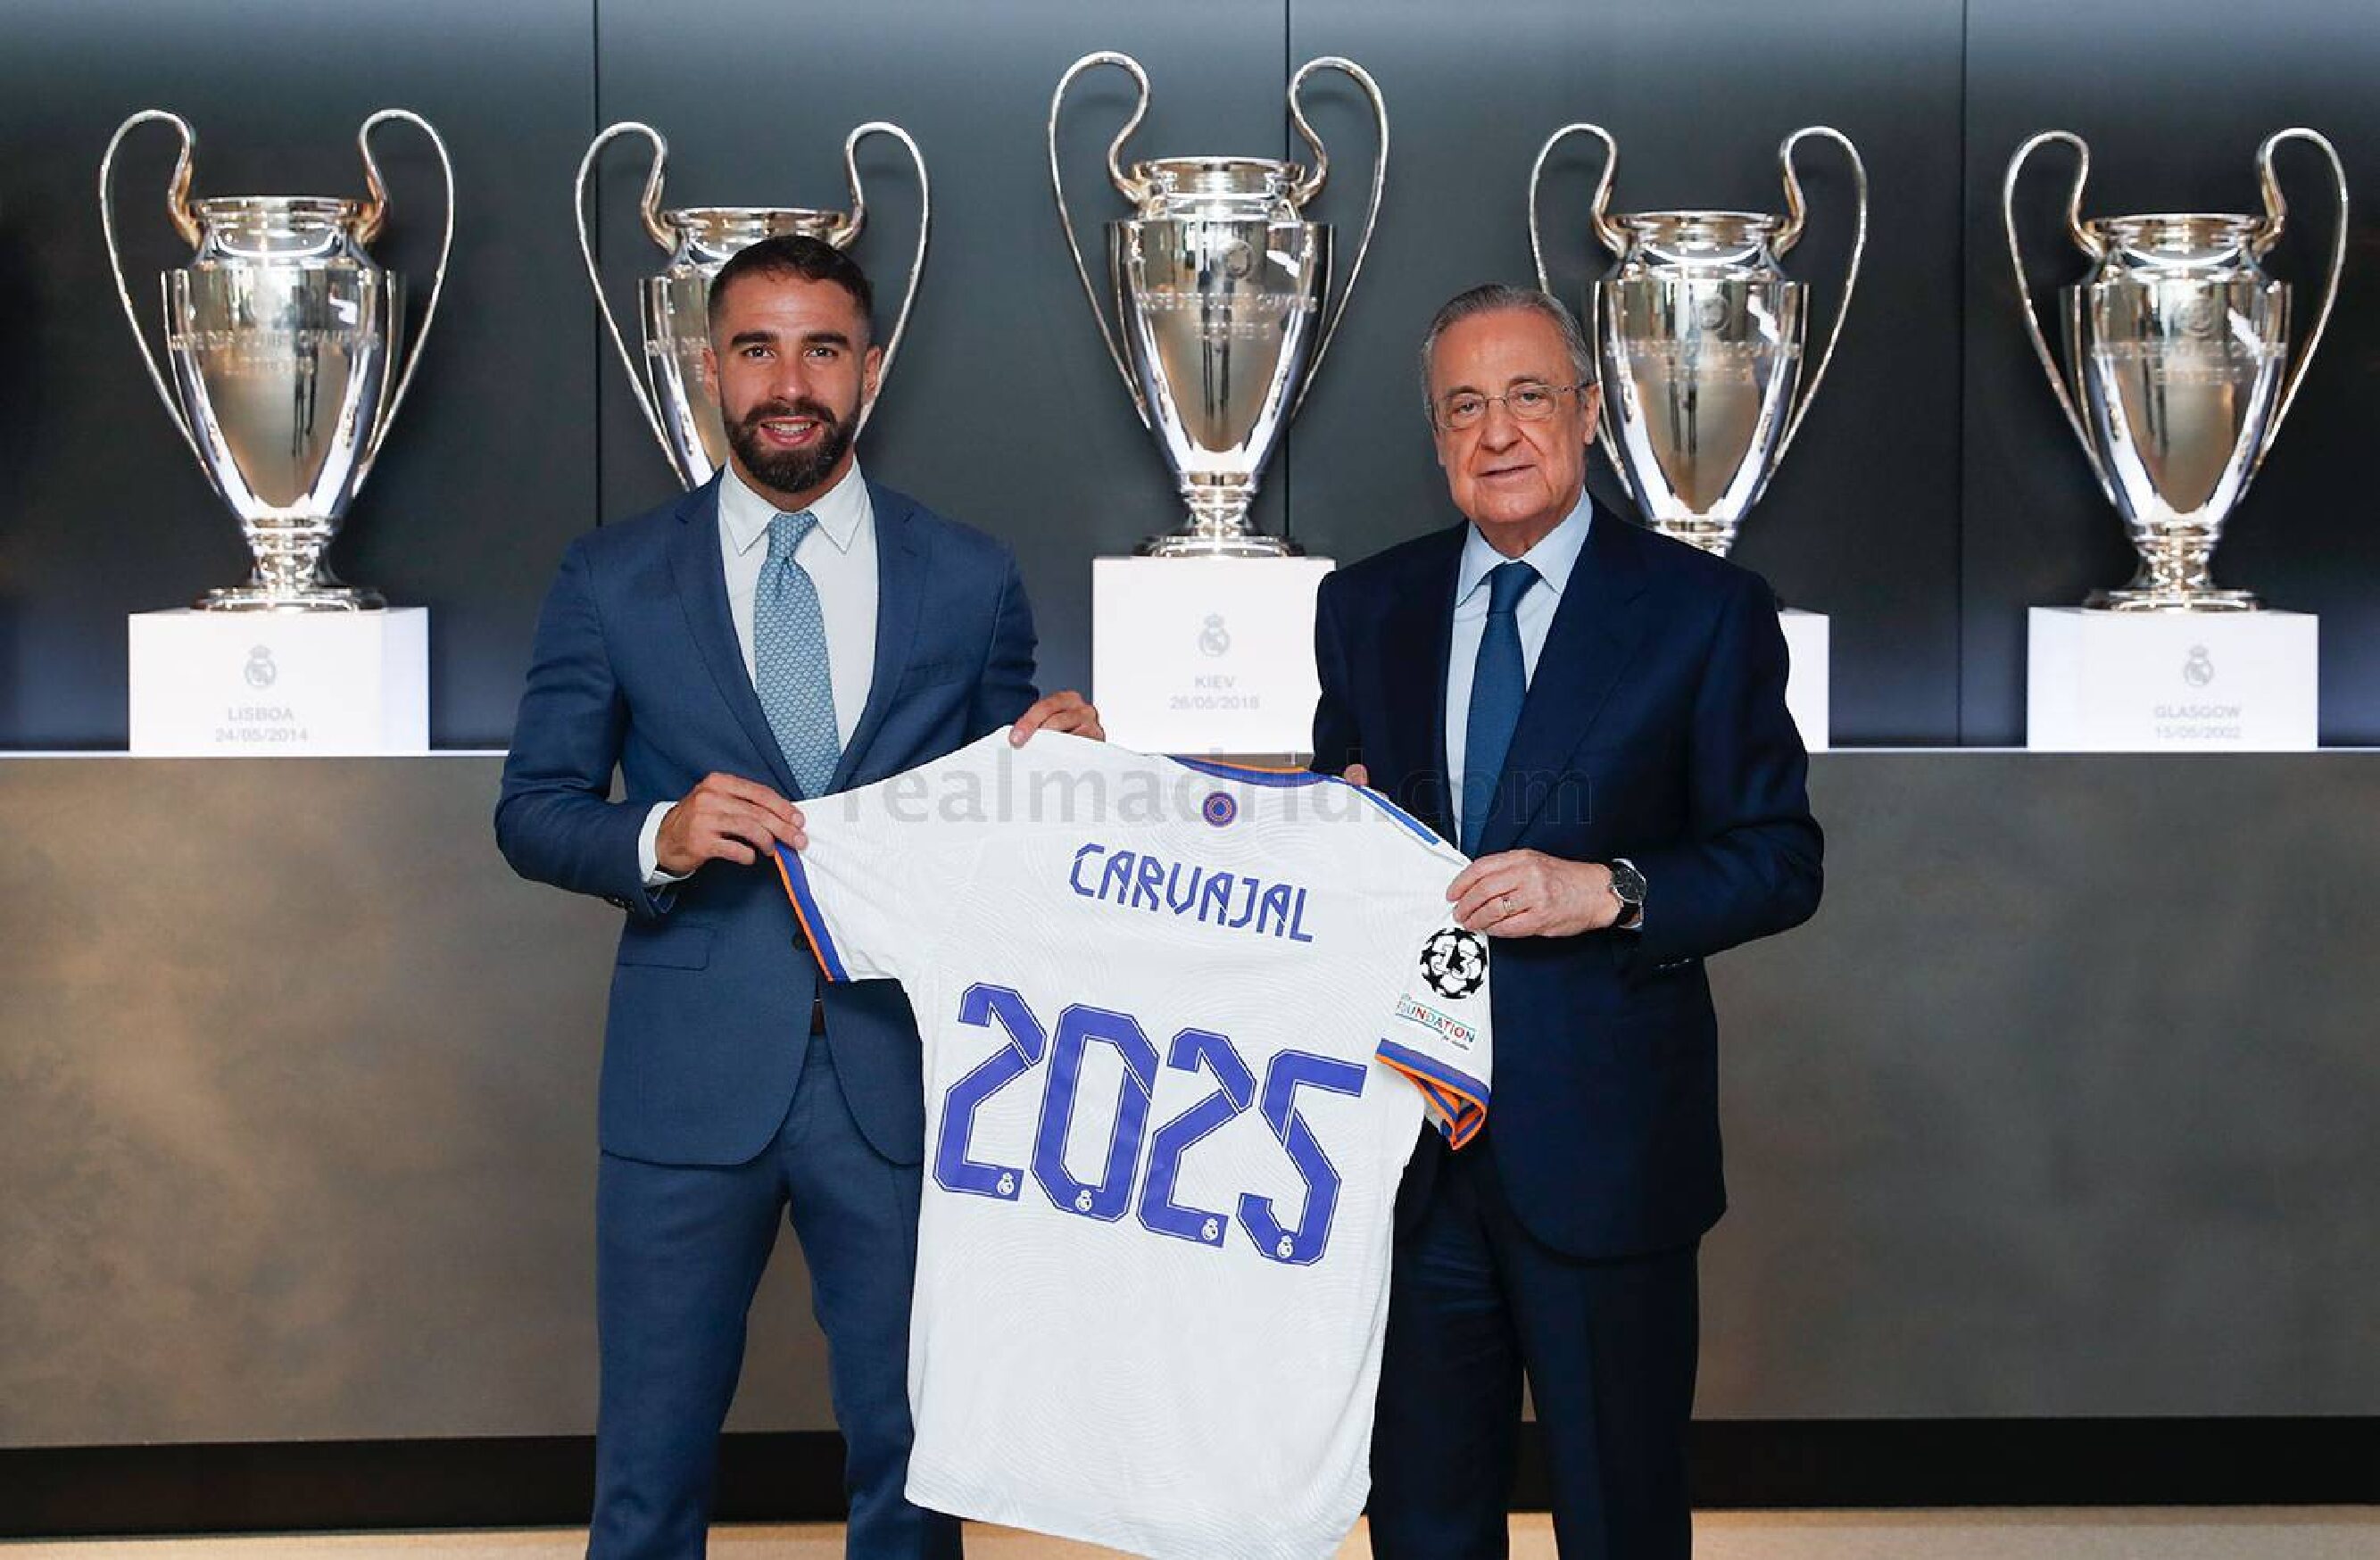  OFICIAL: Carvajal renueva con el Real Madrid hasta junio de 2025.